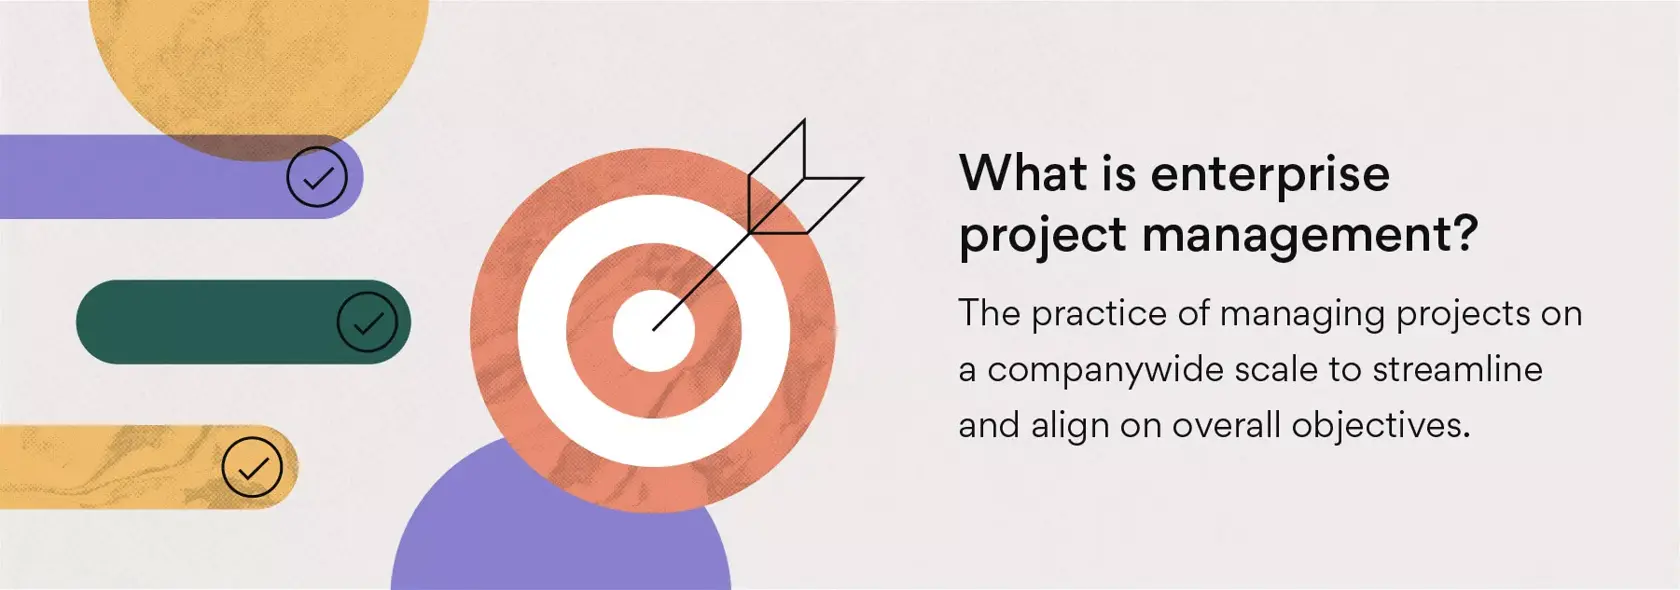 O que é a gestão corporativa de projetos?